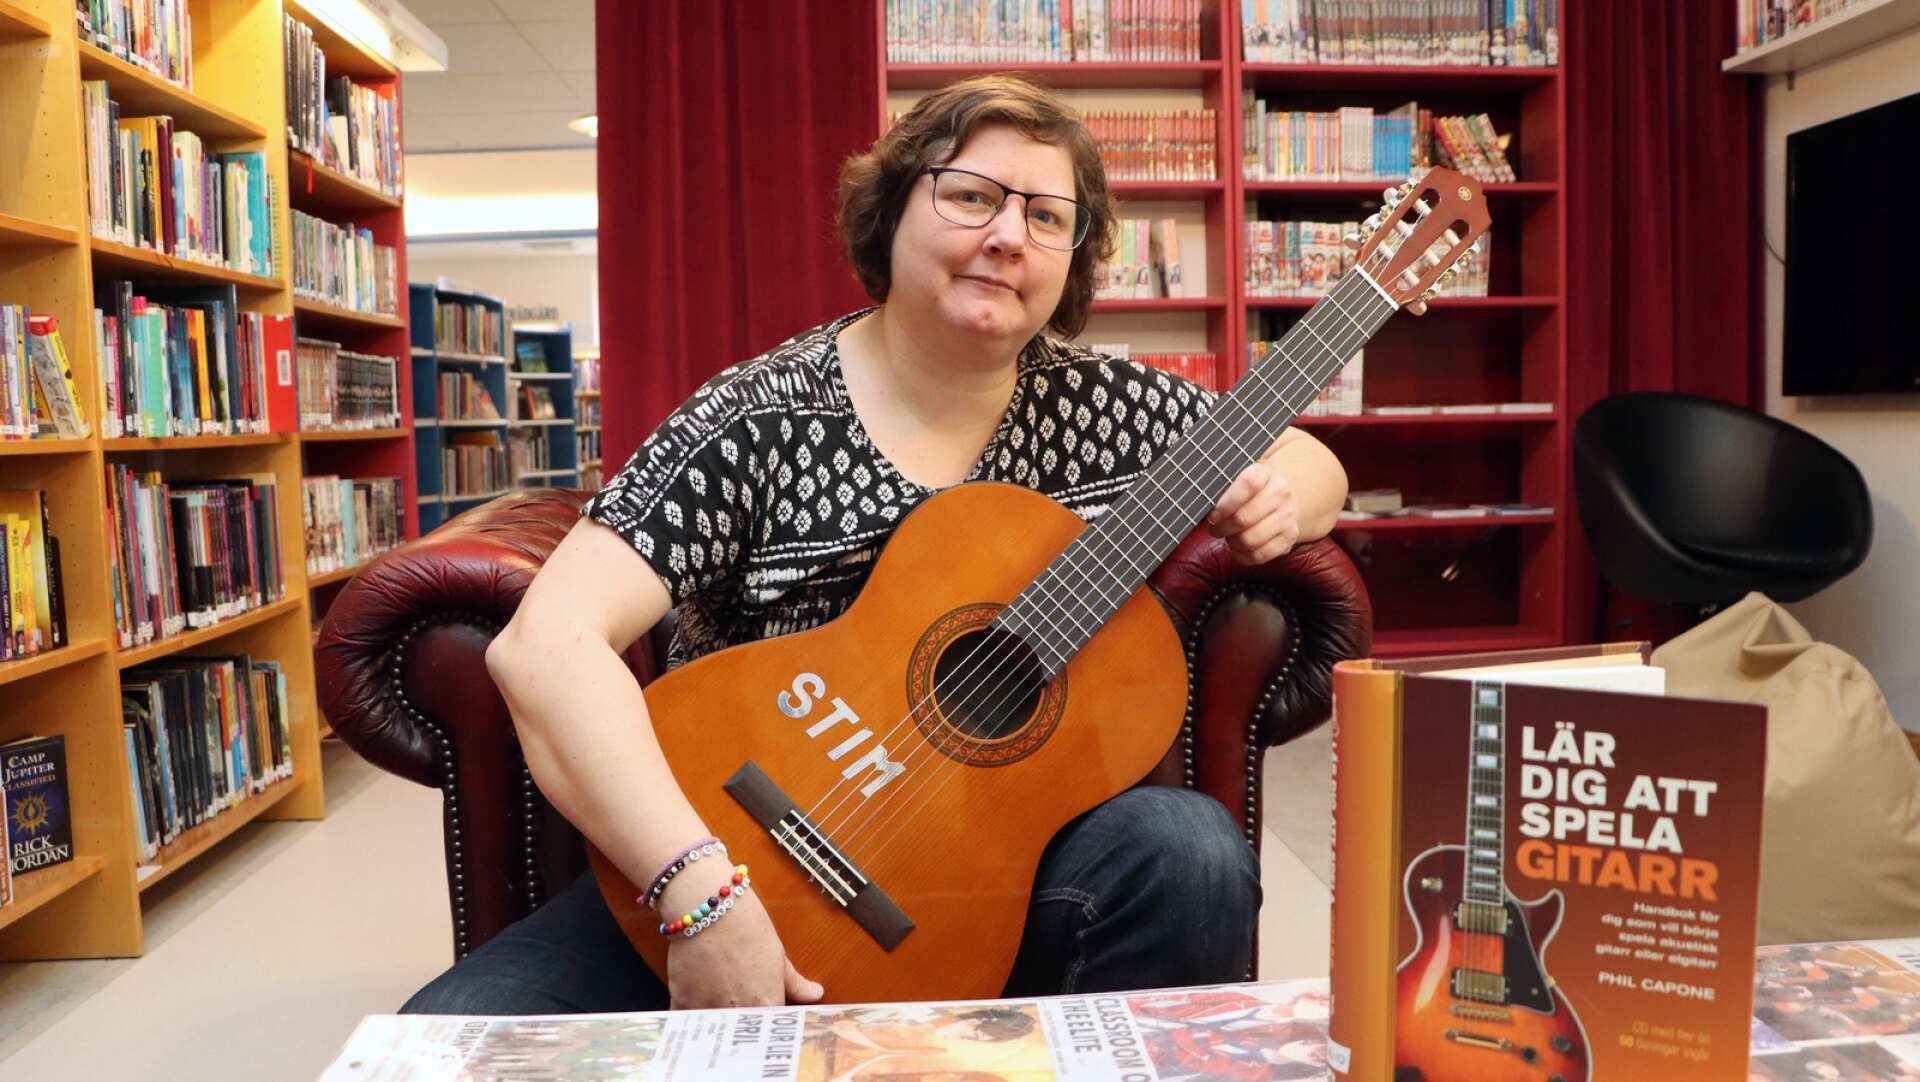 Stadsbiblioteket i Hjo har numera en gitarr från utlån som de fått via Stim, berättar bibliotekarien Fredrika Johansson. 